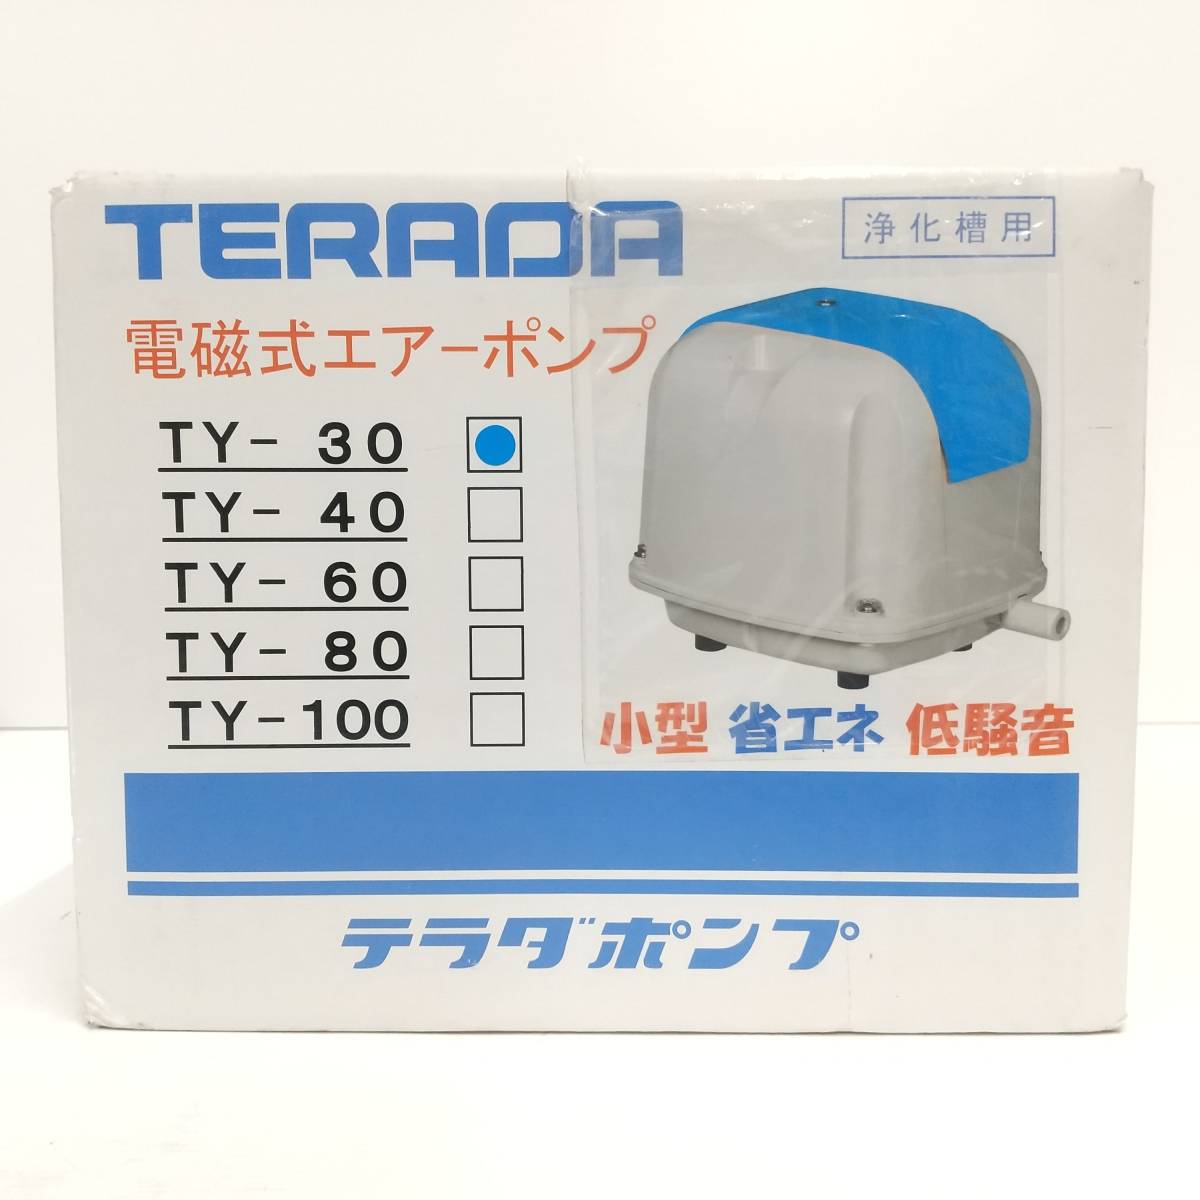 寺田ポンプ TY-30 浄化槽用 電磁式エアーポンプ 新品